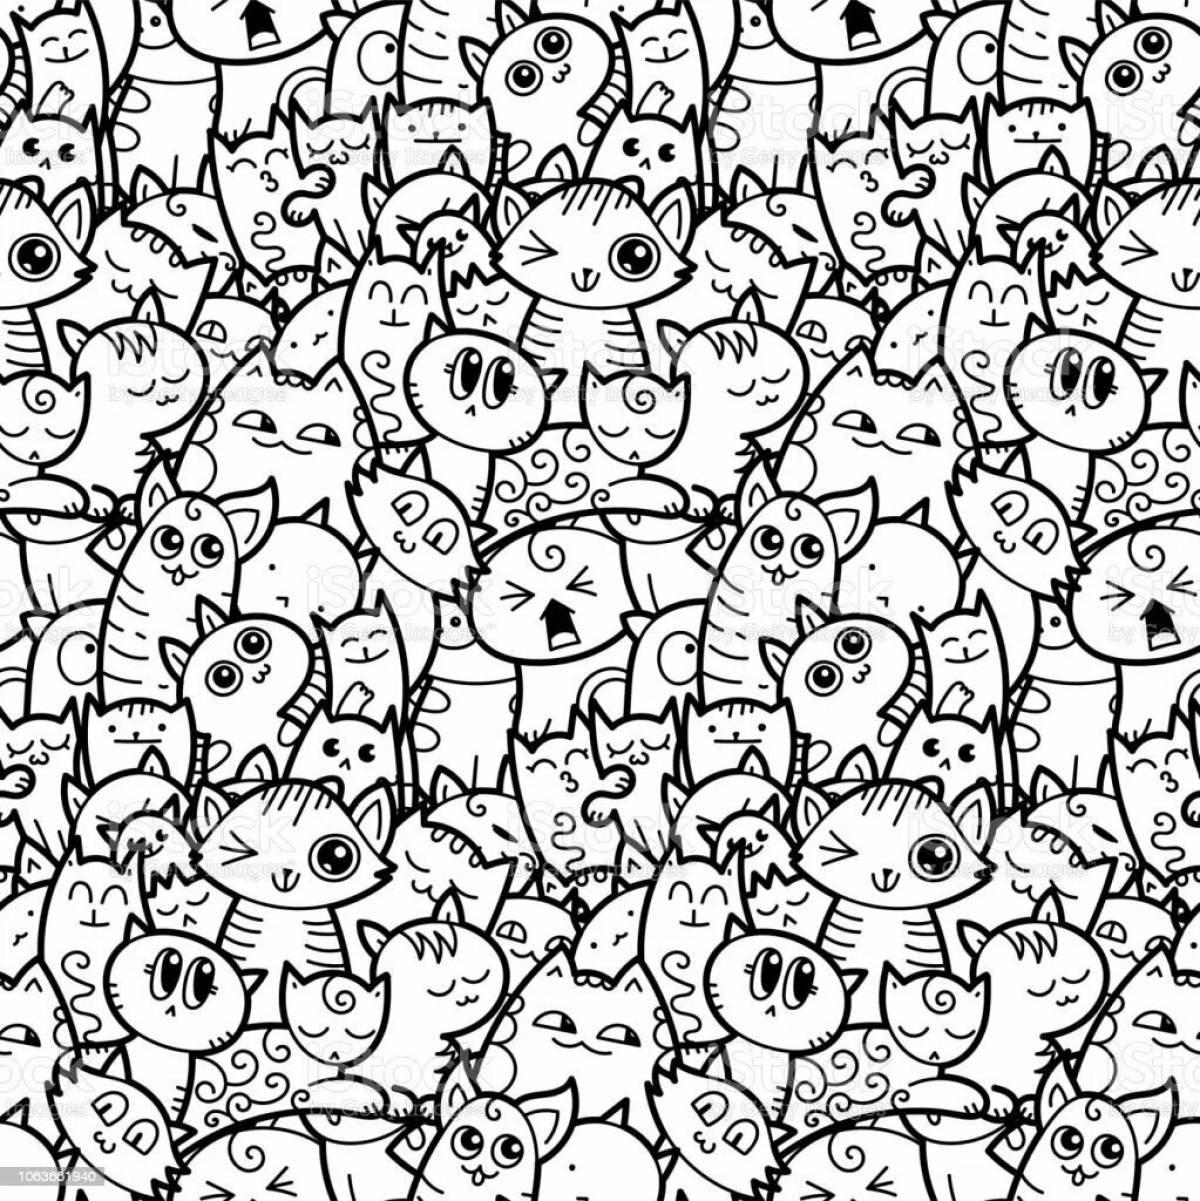 Many cats #5